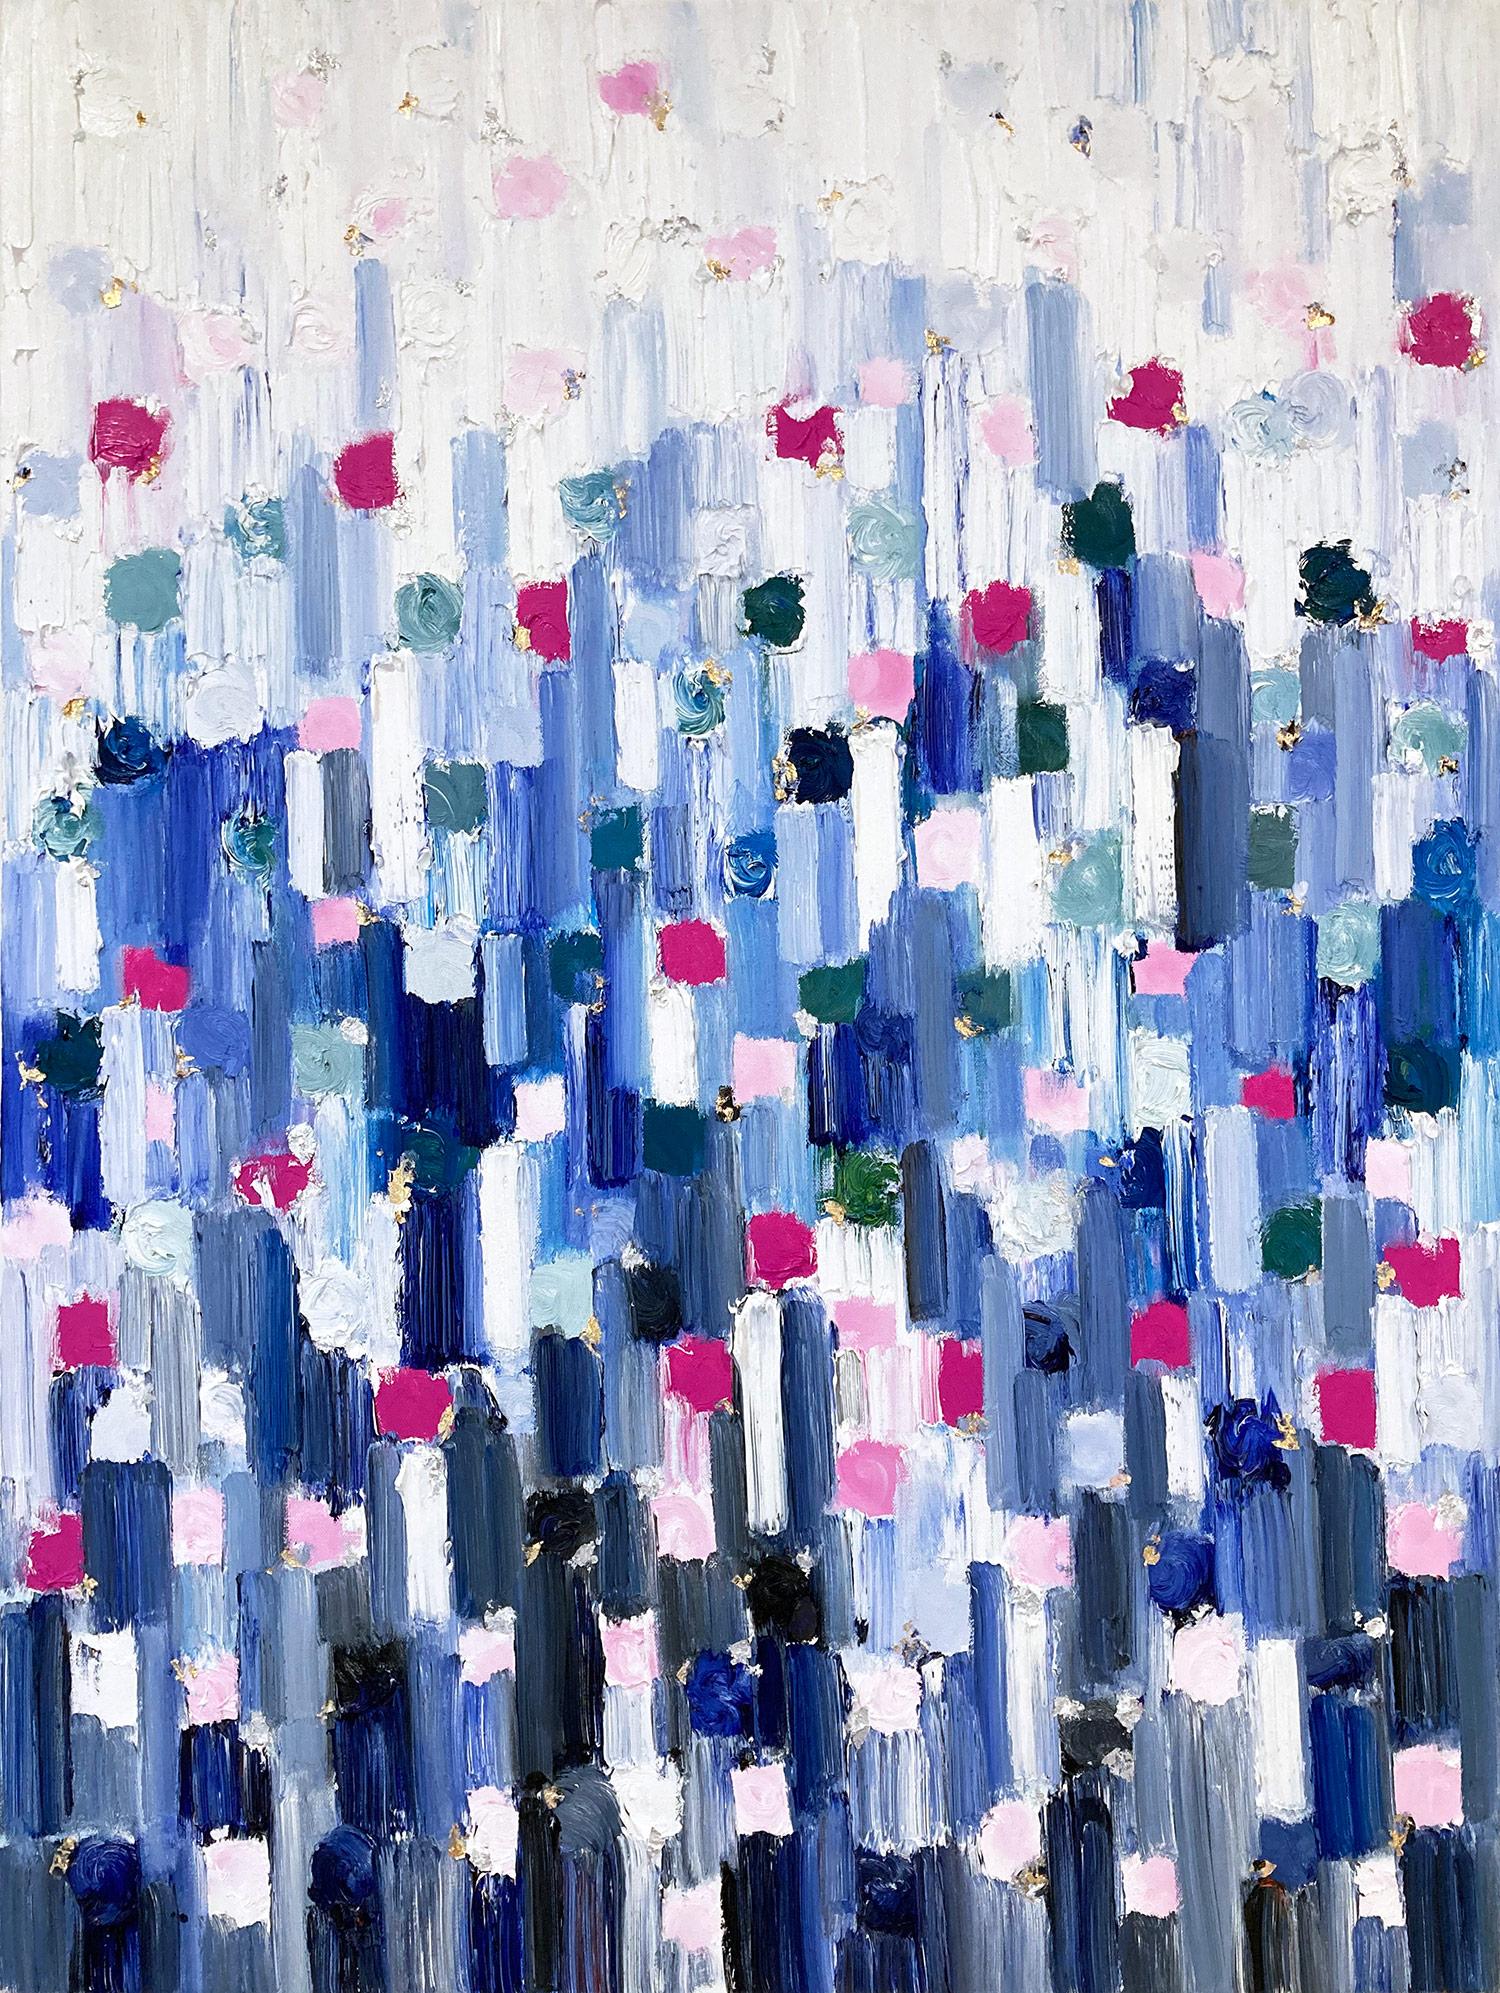 Abstract Painting Cindy Shaoul - « »Dripping Dots -  Peinture à l'huile abstraite colorée sur toile « Gramercy Park » 